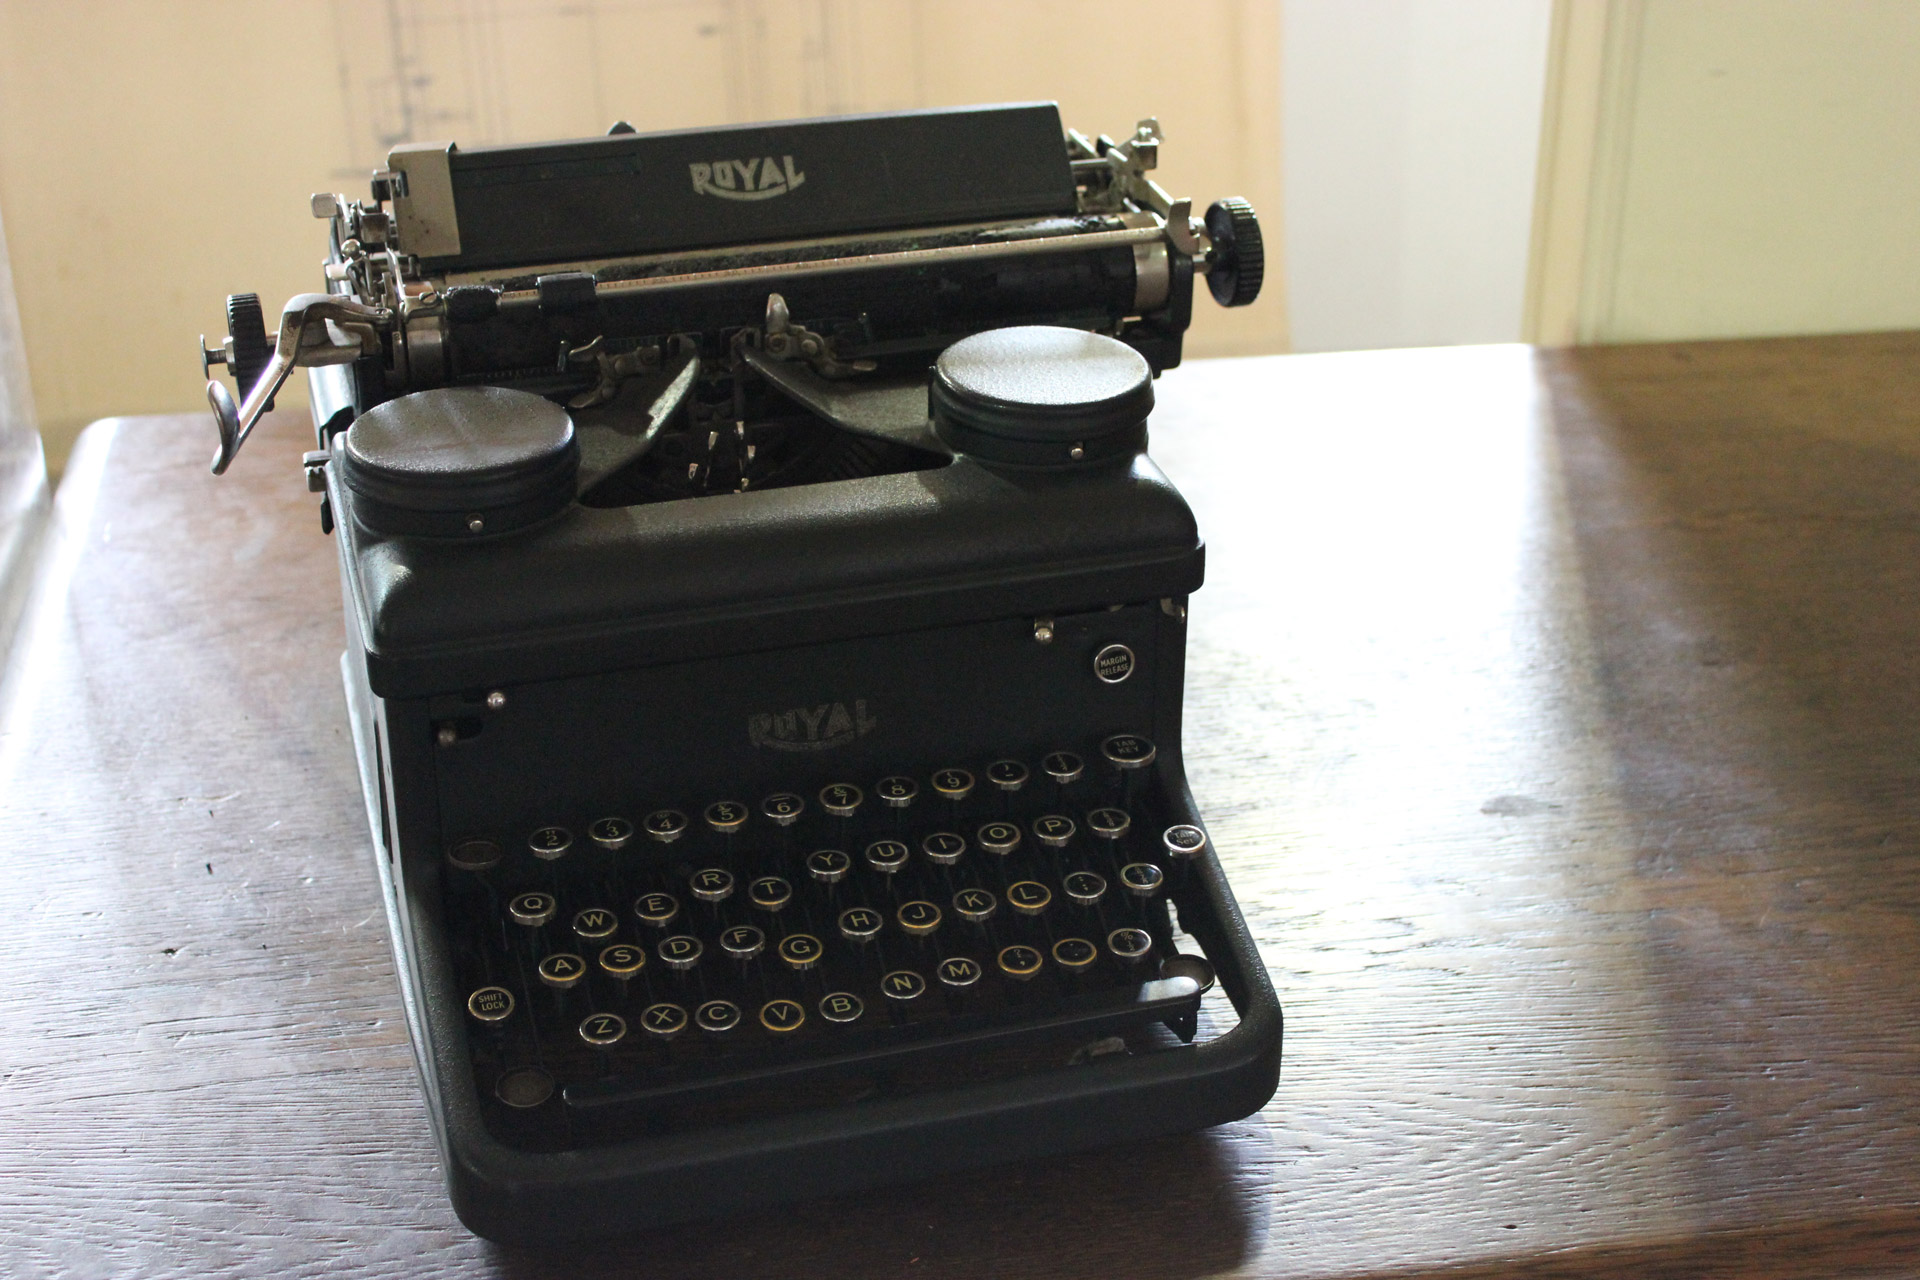 royal typewriter typewriter vintage free photo